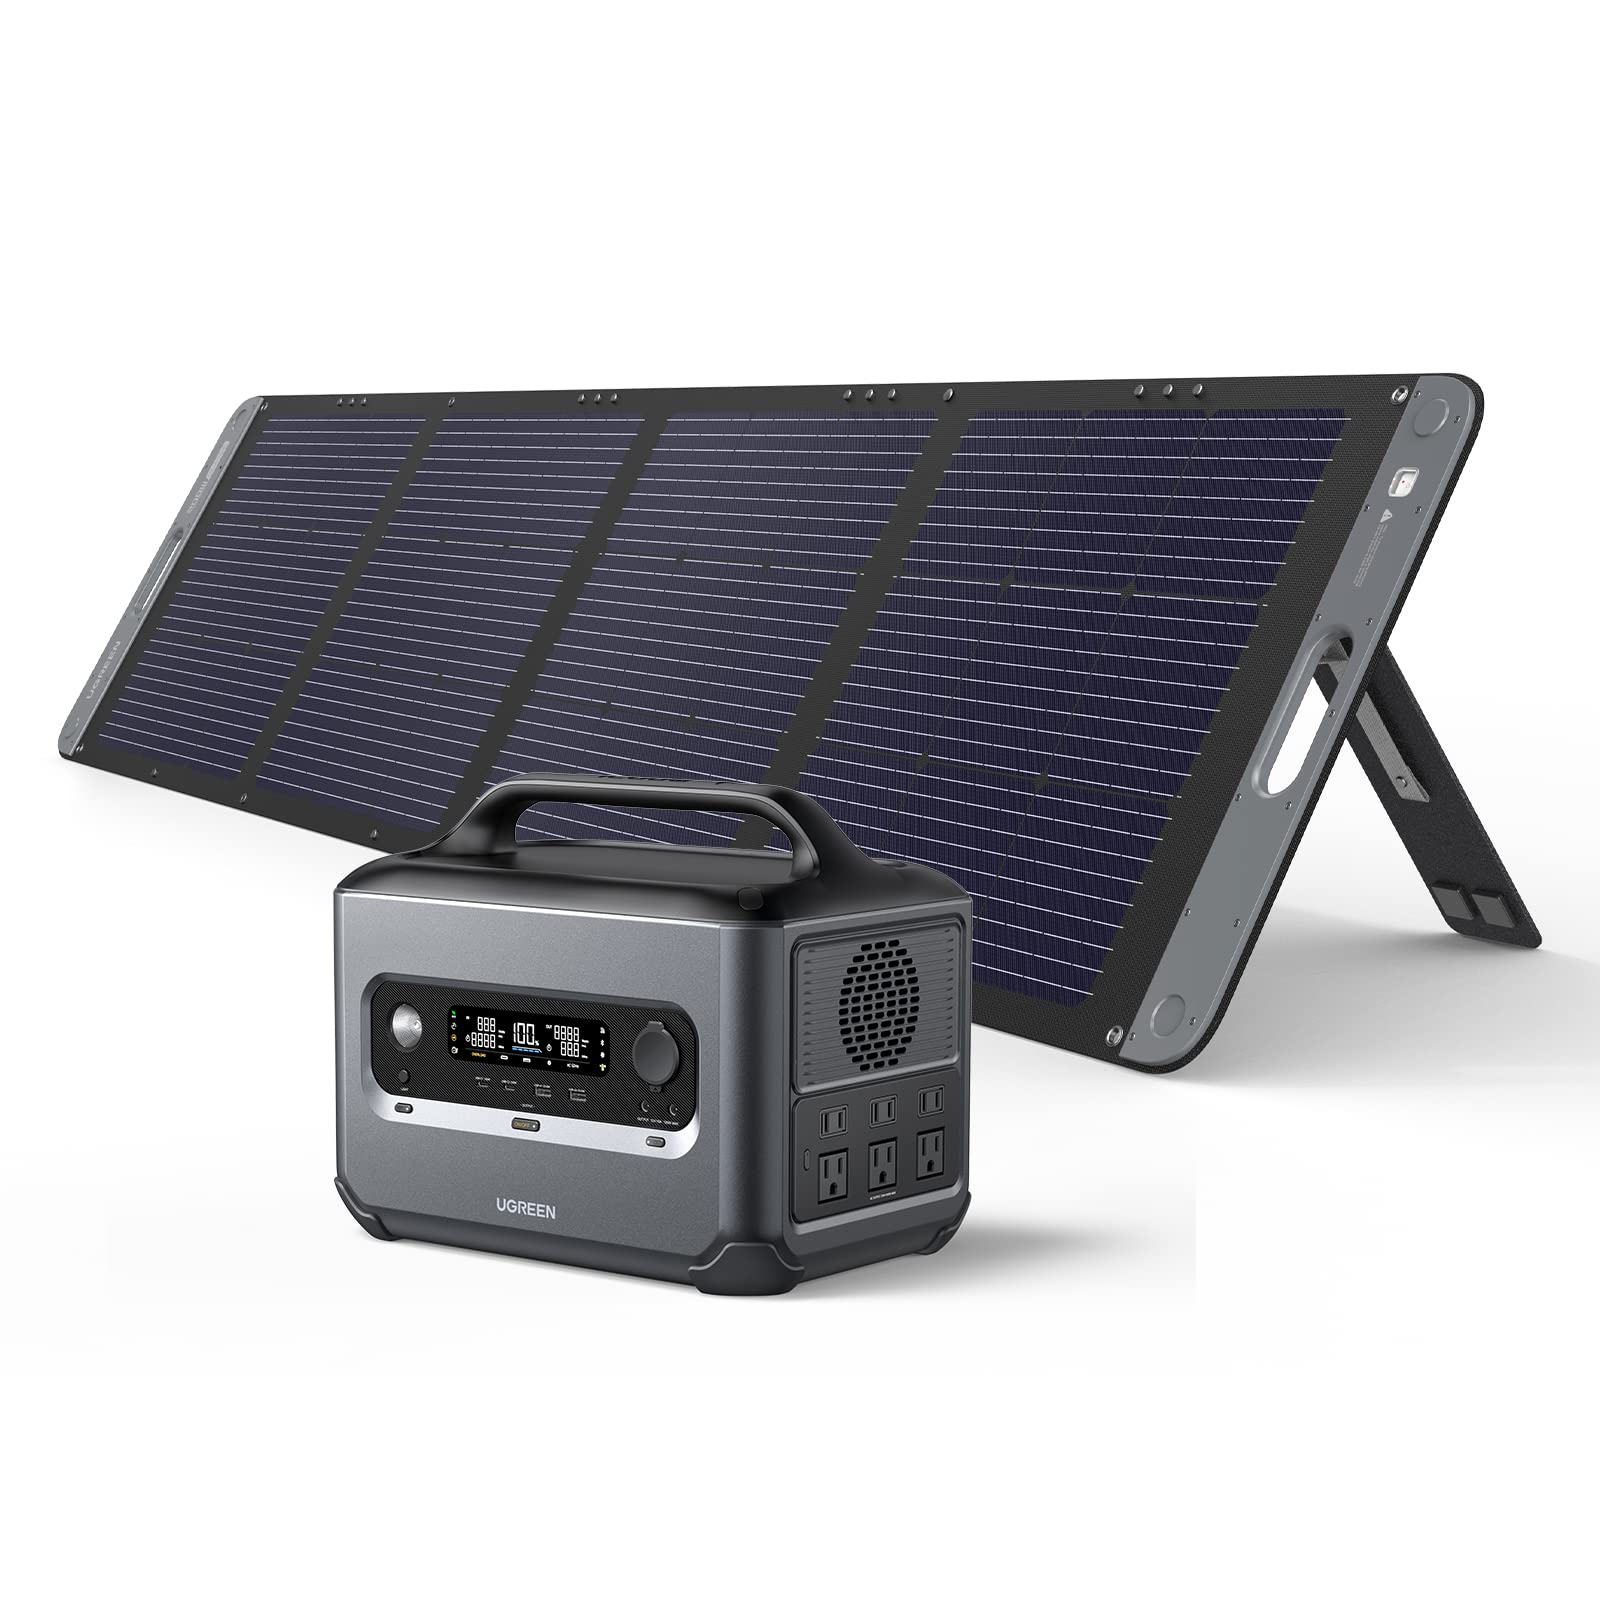 Ugreen PowerRoam 1200 Solar Generation 